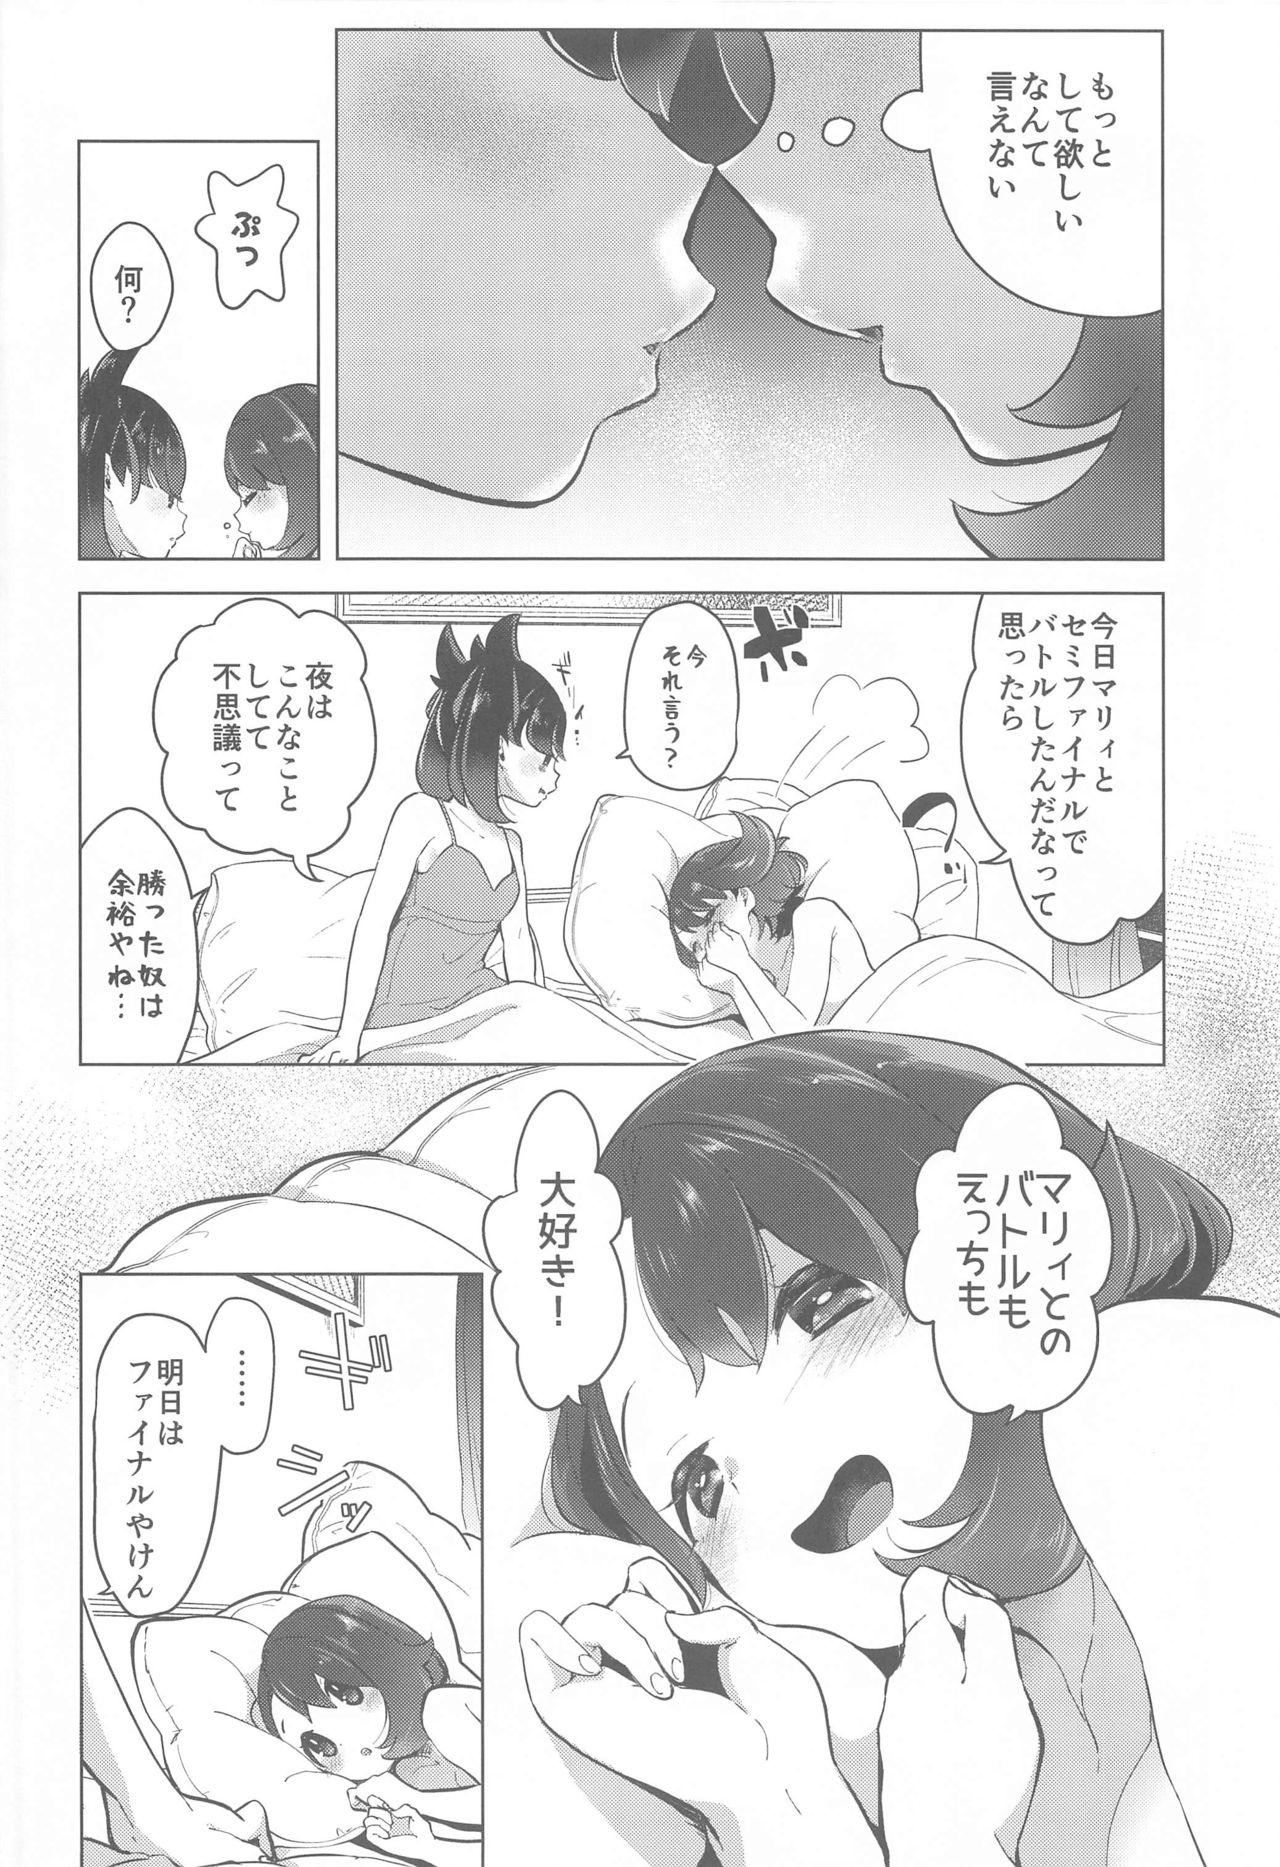 Clip Marnie wa Yuuri kara Amai Ringo o Futatsu Moraimashita - Pokemon Cavala - Page 7